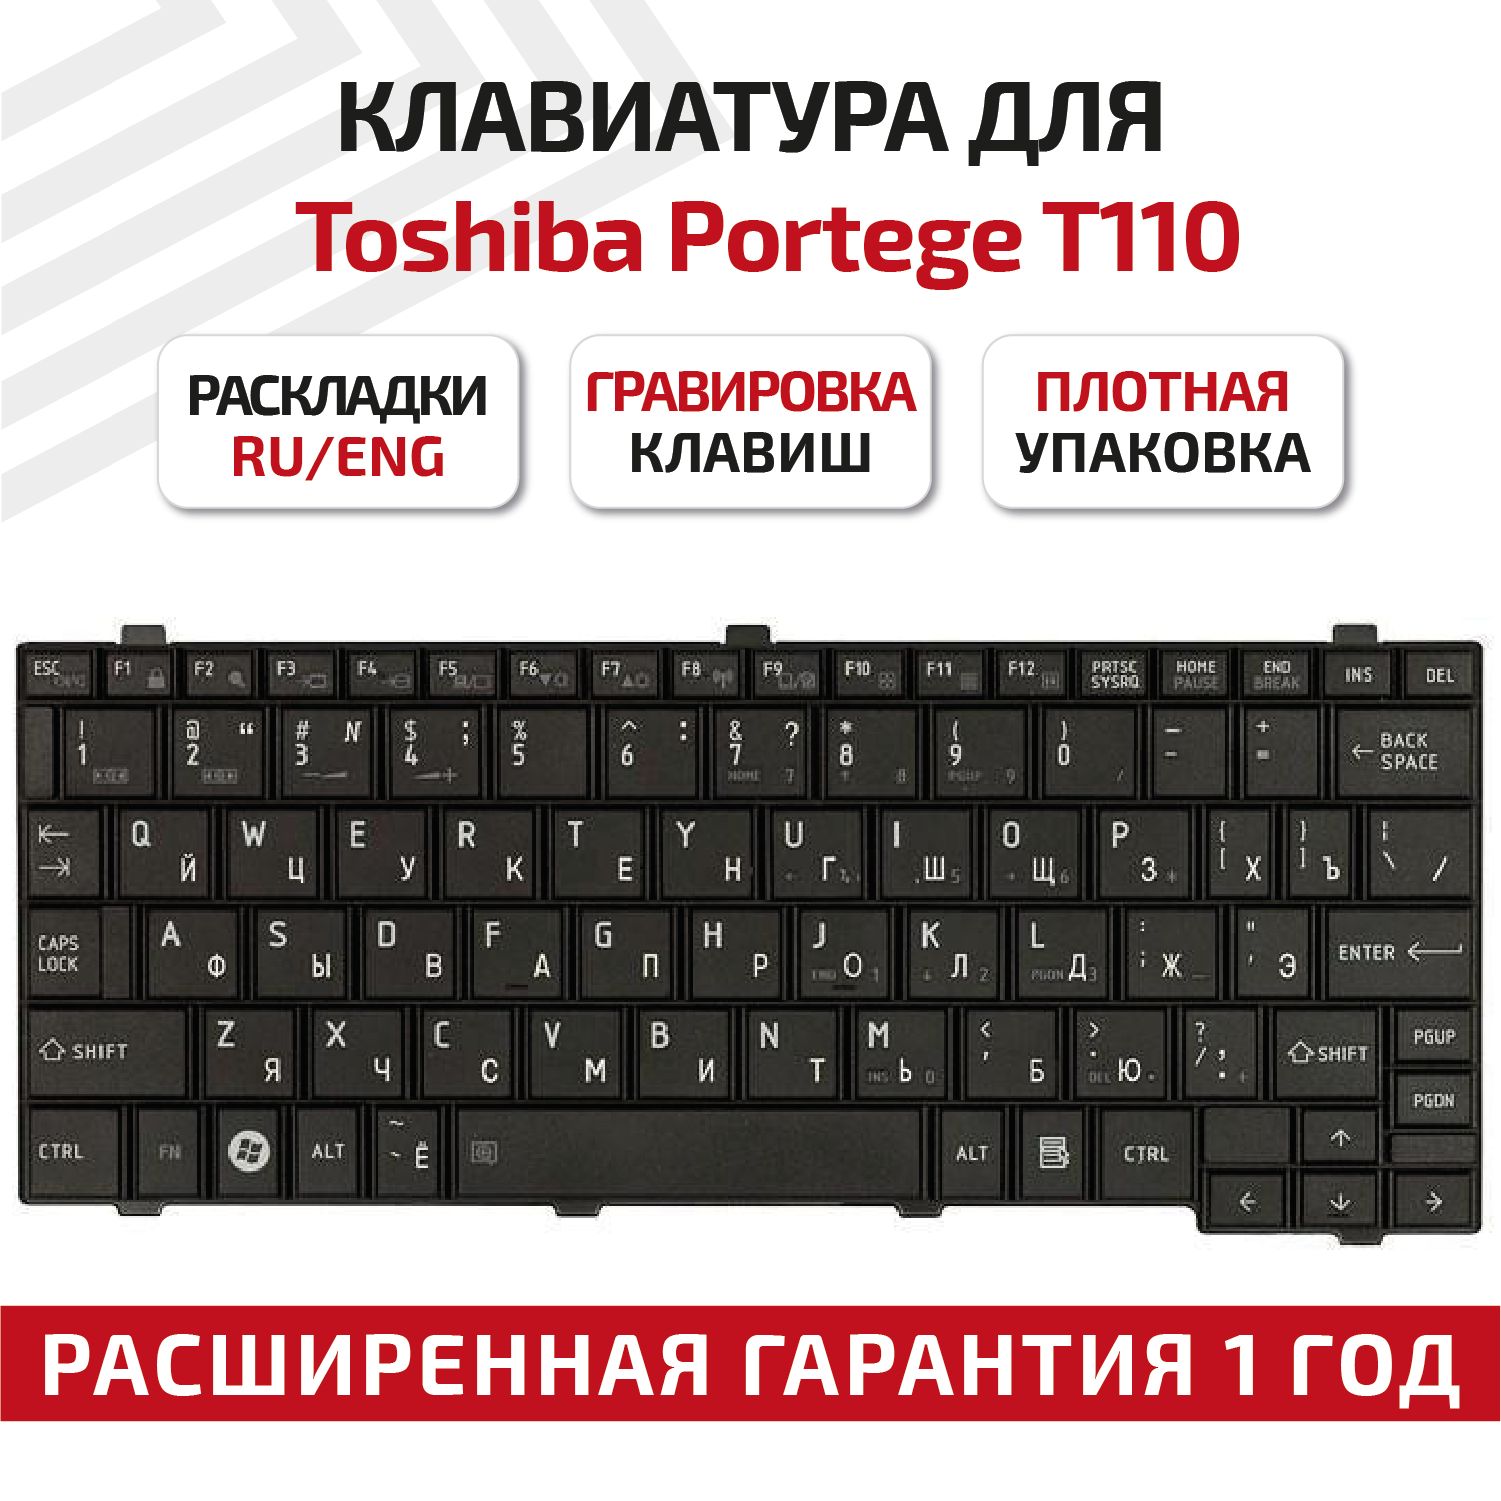 Клавиатура nsk. Микроc клавиатура.